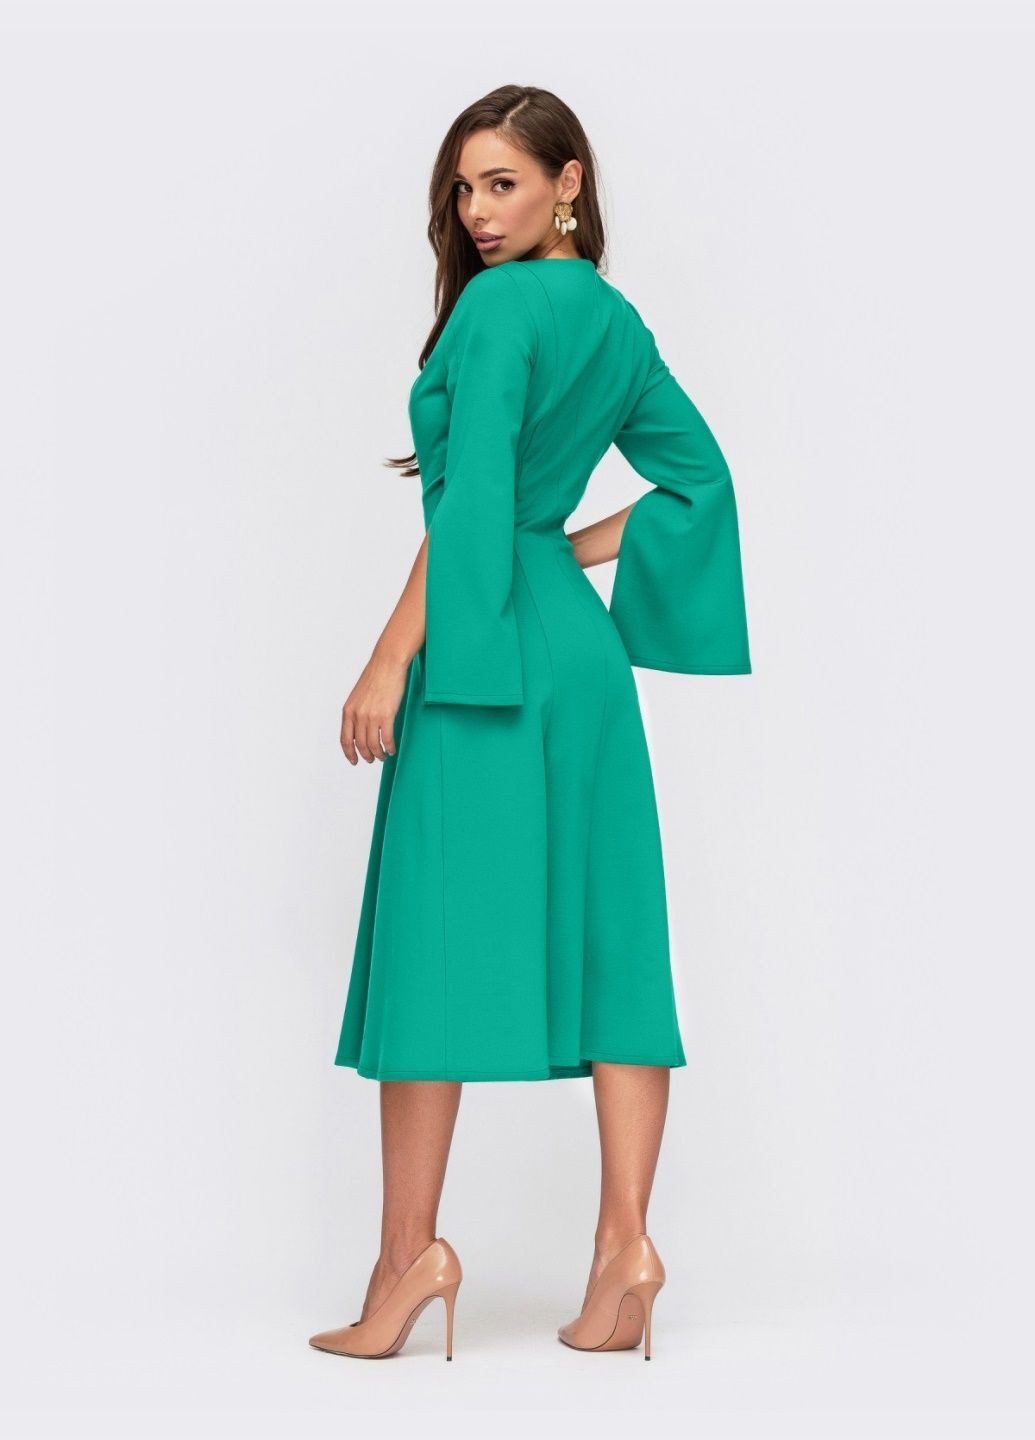 Зеленое бирюзовое платье-клёш с разрезами на рукавах Dressa